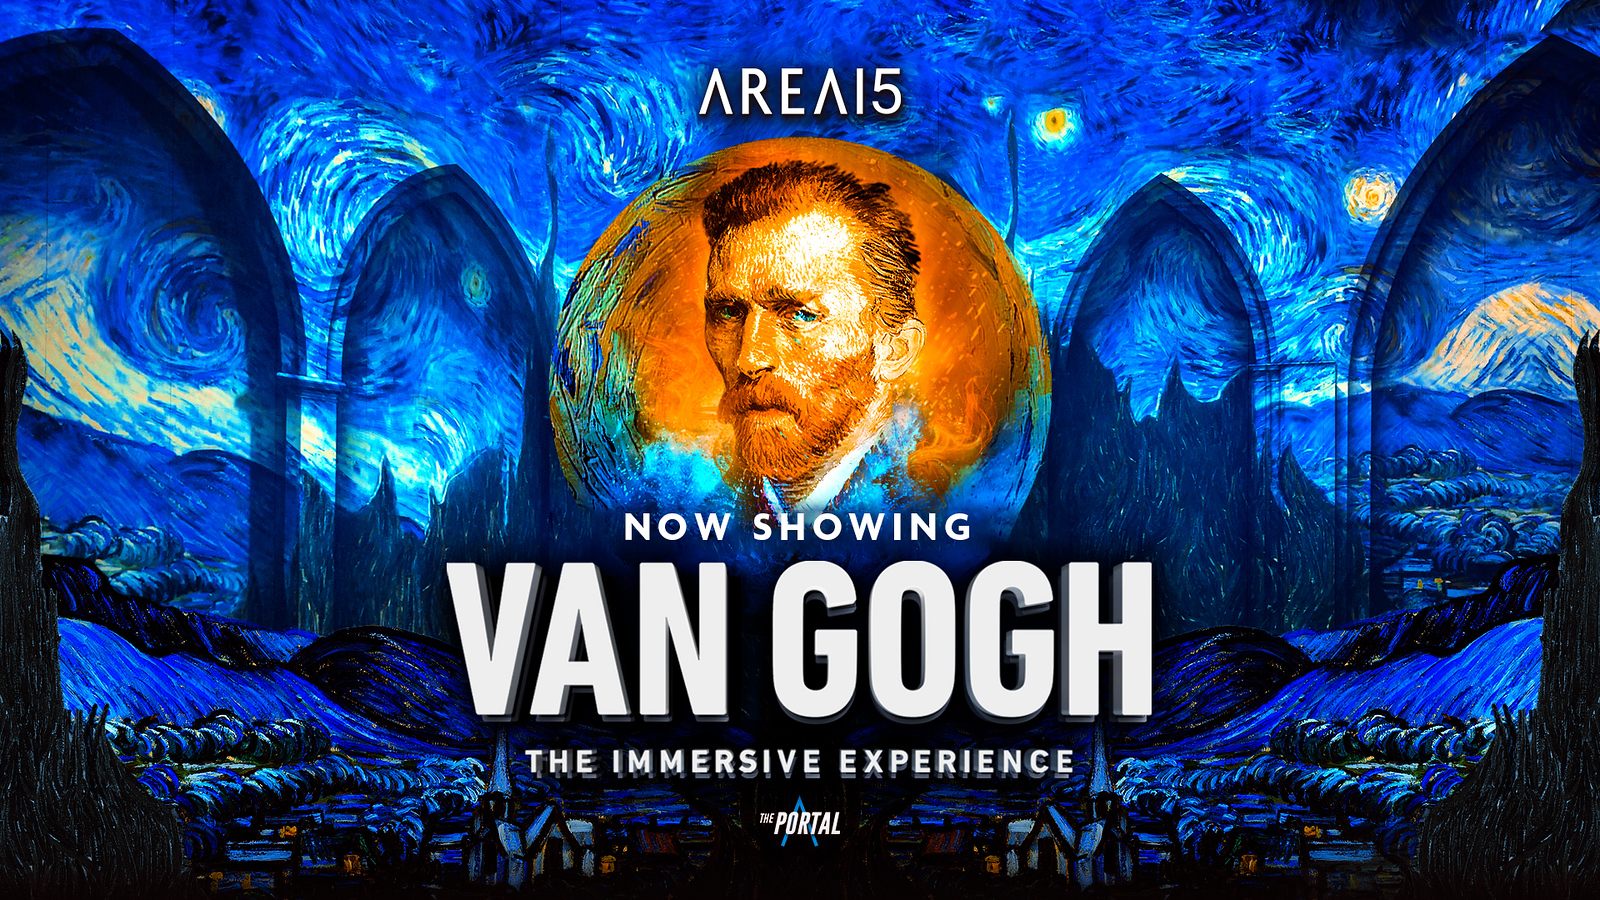 van gogh immersive experience, las vegas